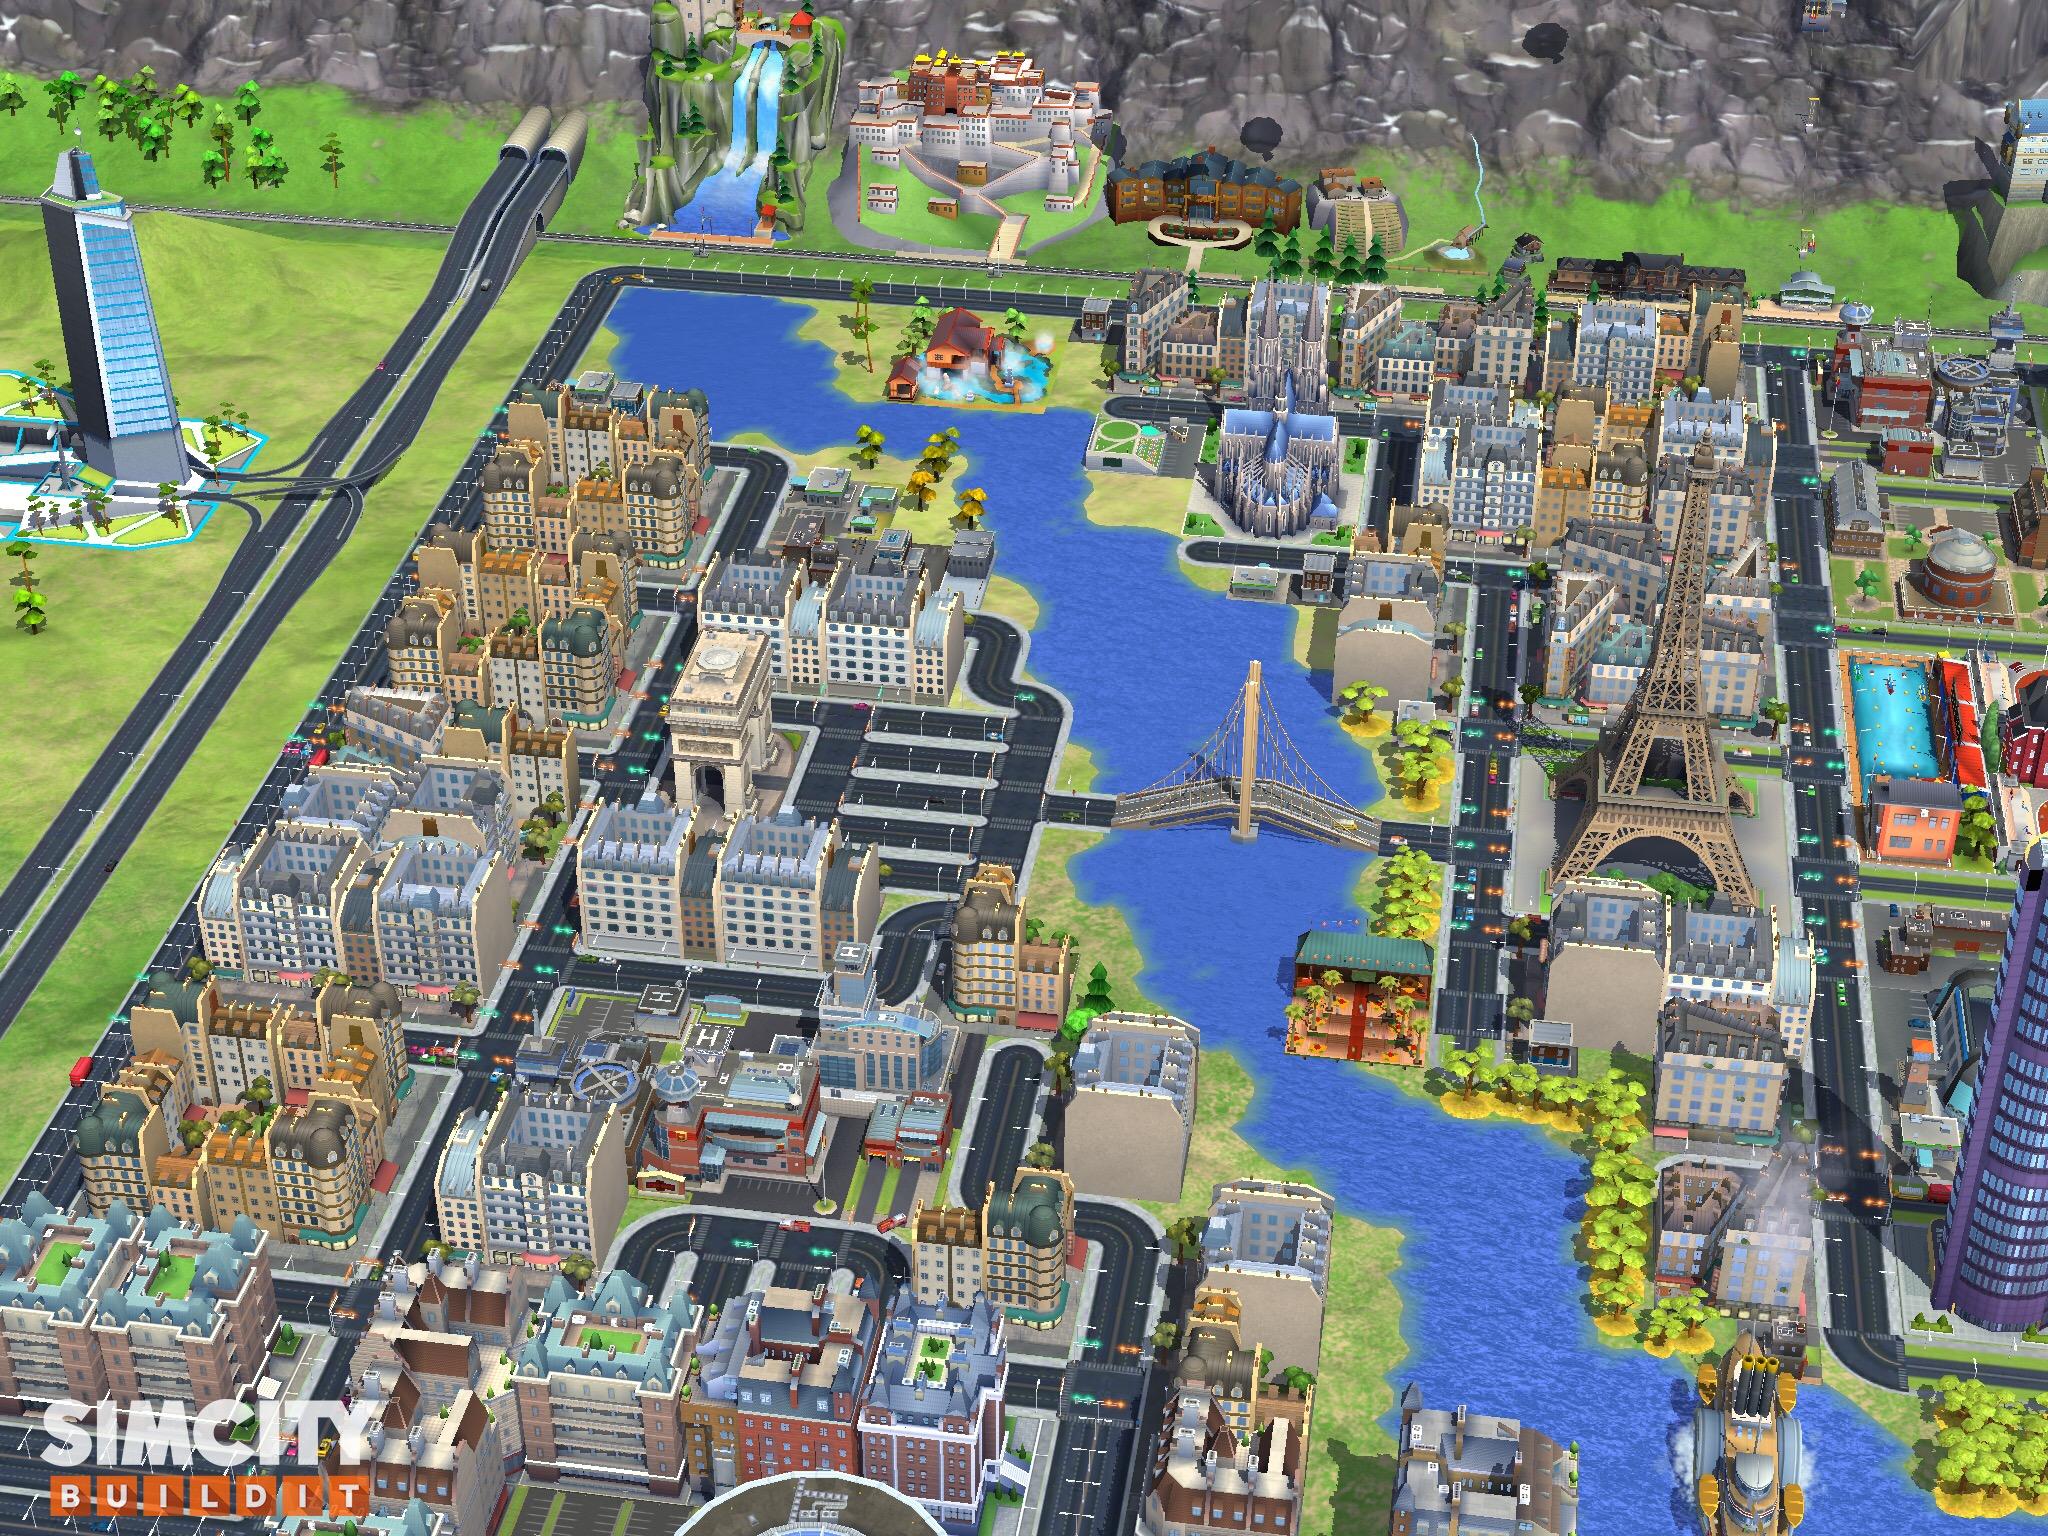 建筑师,规划师玩 simcity buildit(模拟城市建造)是种怎样的体验?